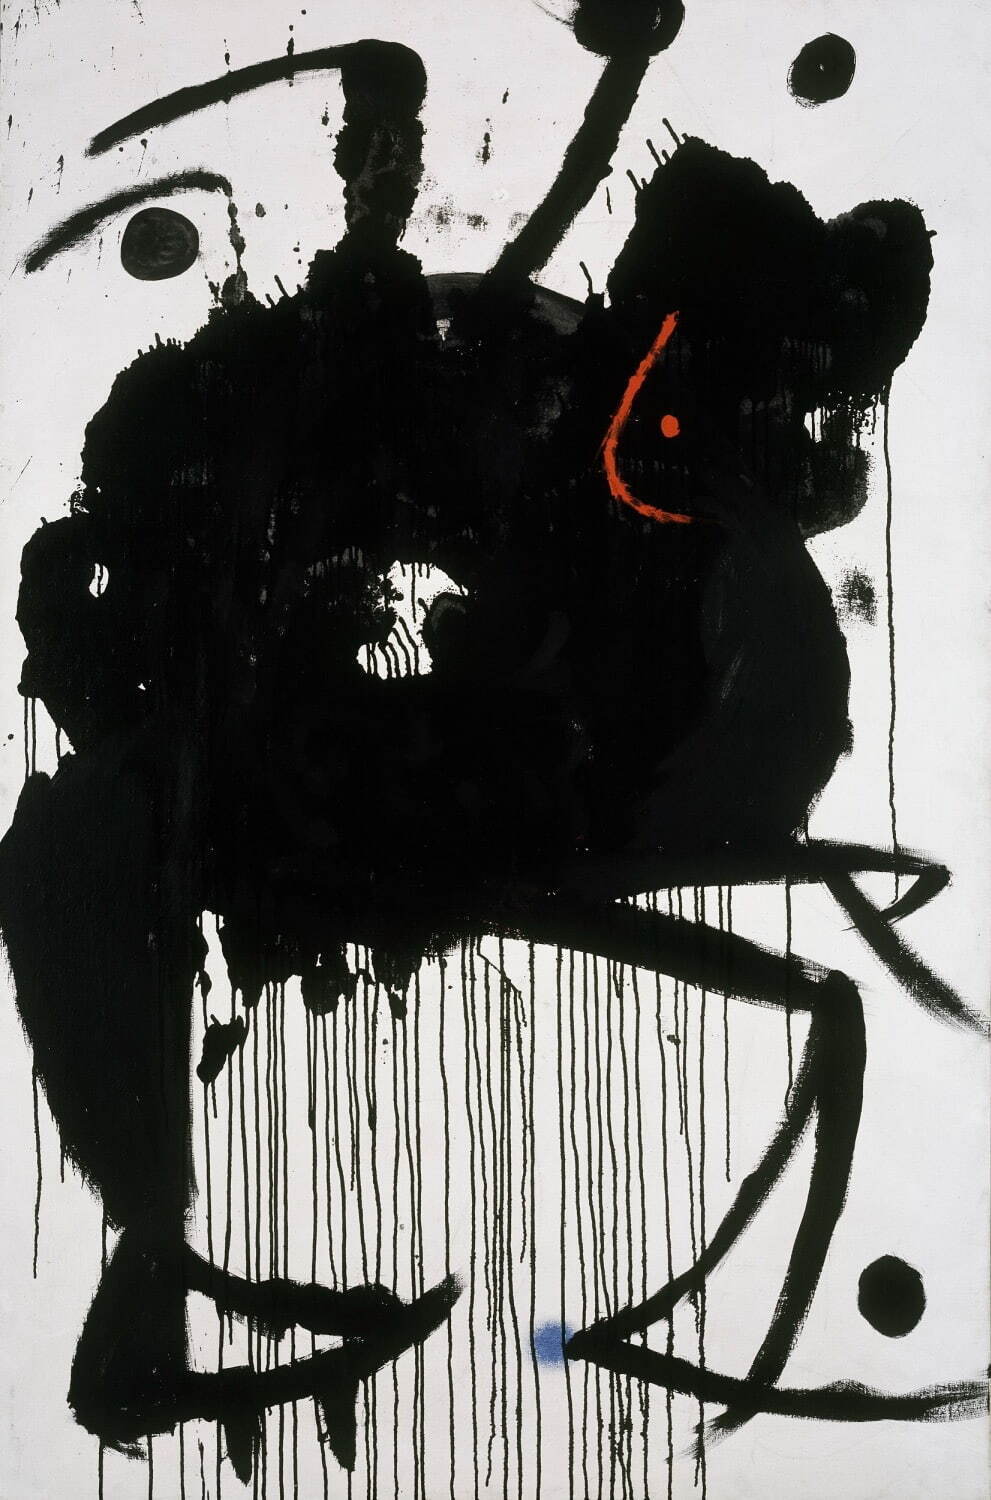 ジュアン・ミロ《絵画》1966年 ピラール＆ジュアン・ミロ財団、マジョルカ Fundació Pilar i Joan Miró a Mallorca Photographic Archive ©Successió Miró/ADAGP, Paris & JASPAR, Tokyo, 2022 E4304